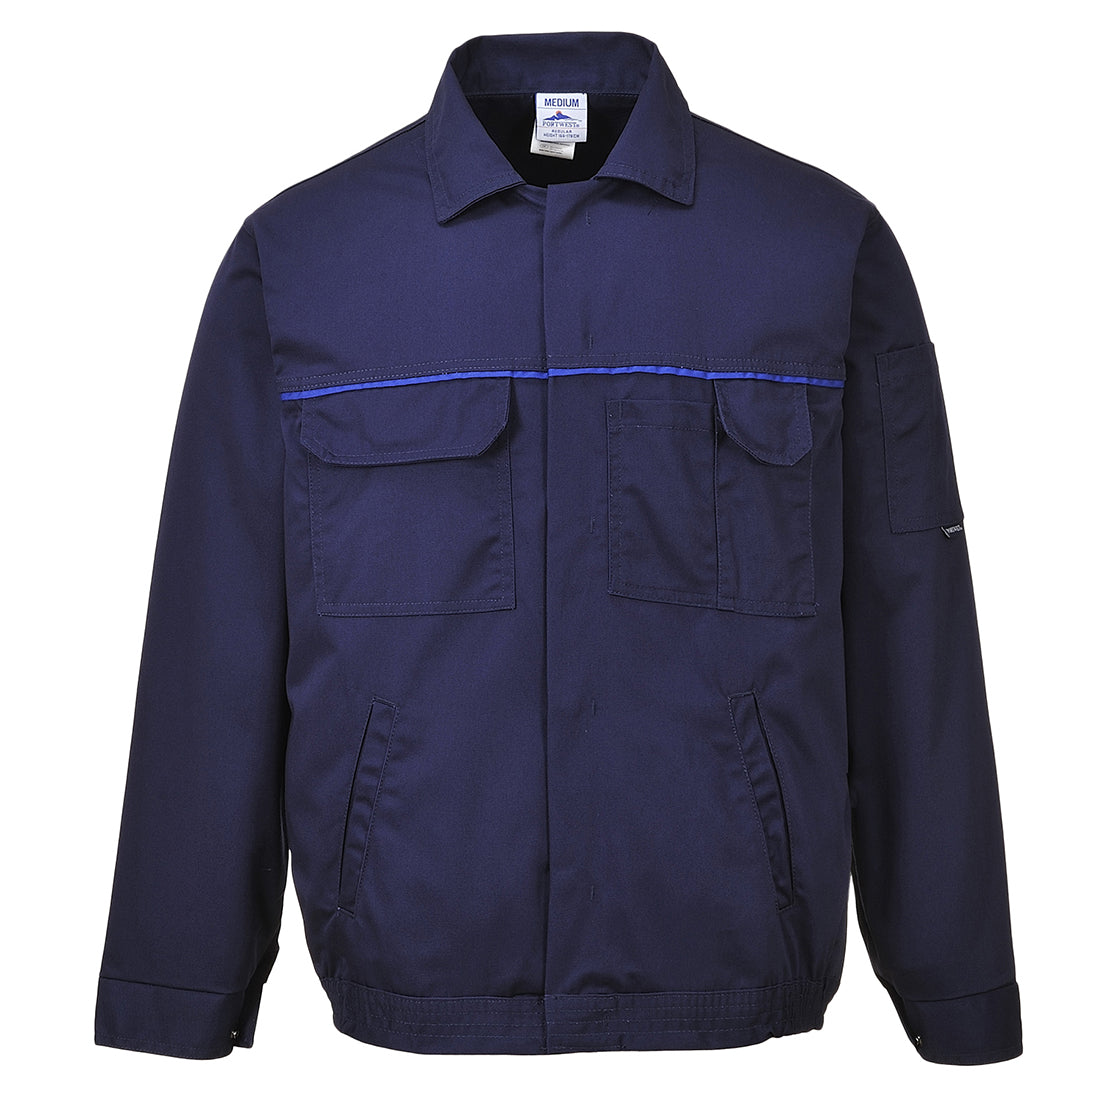 Portwest 2860 - Navy Classic Work Jacket Coat sz XXL Regular